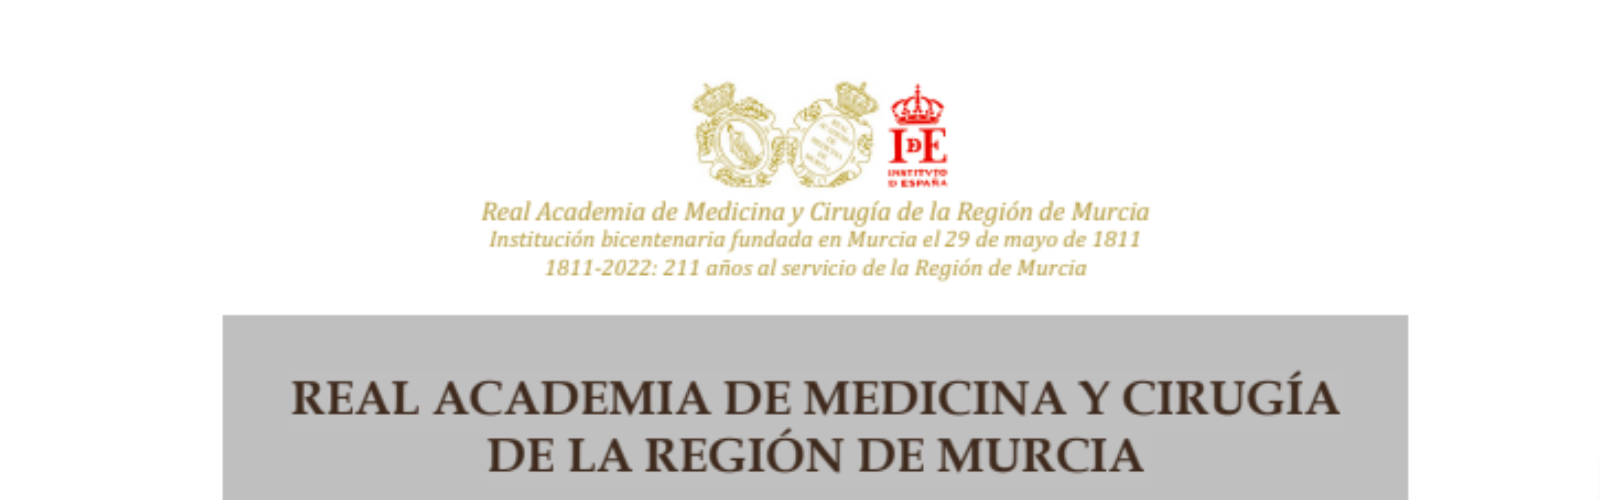 La Real Academia de Medicina y Cirugía lanza su convocatoria de Premios de Investigación 2022